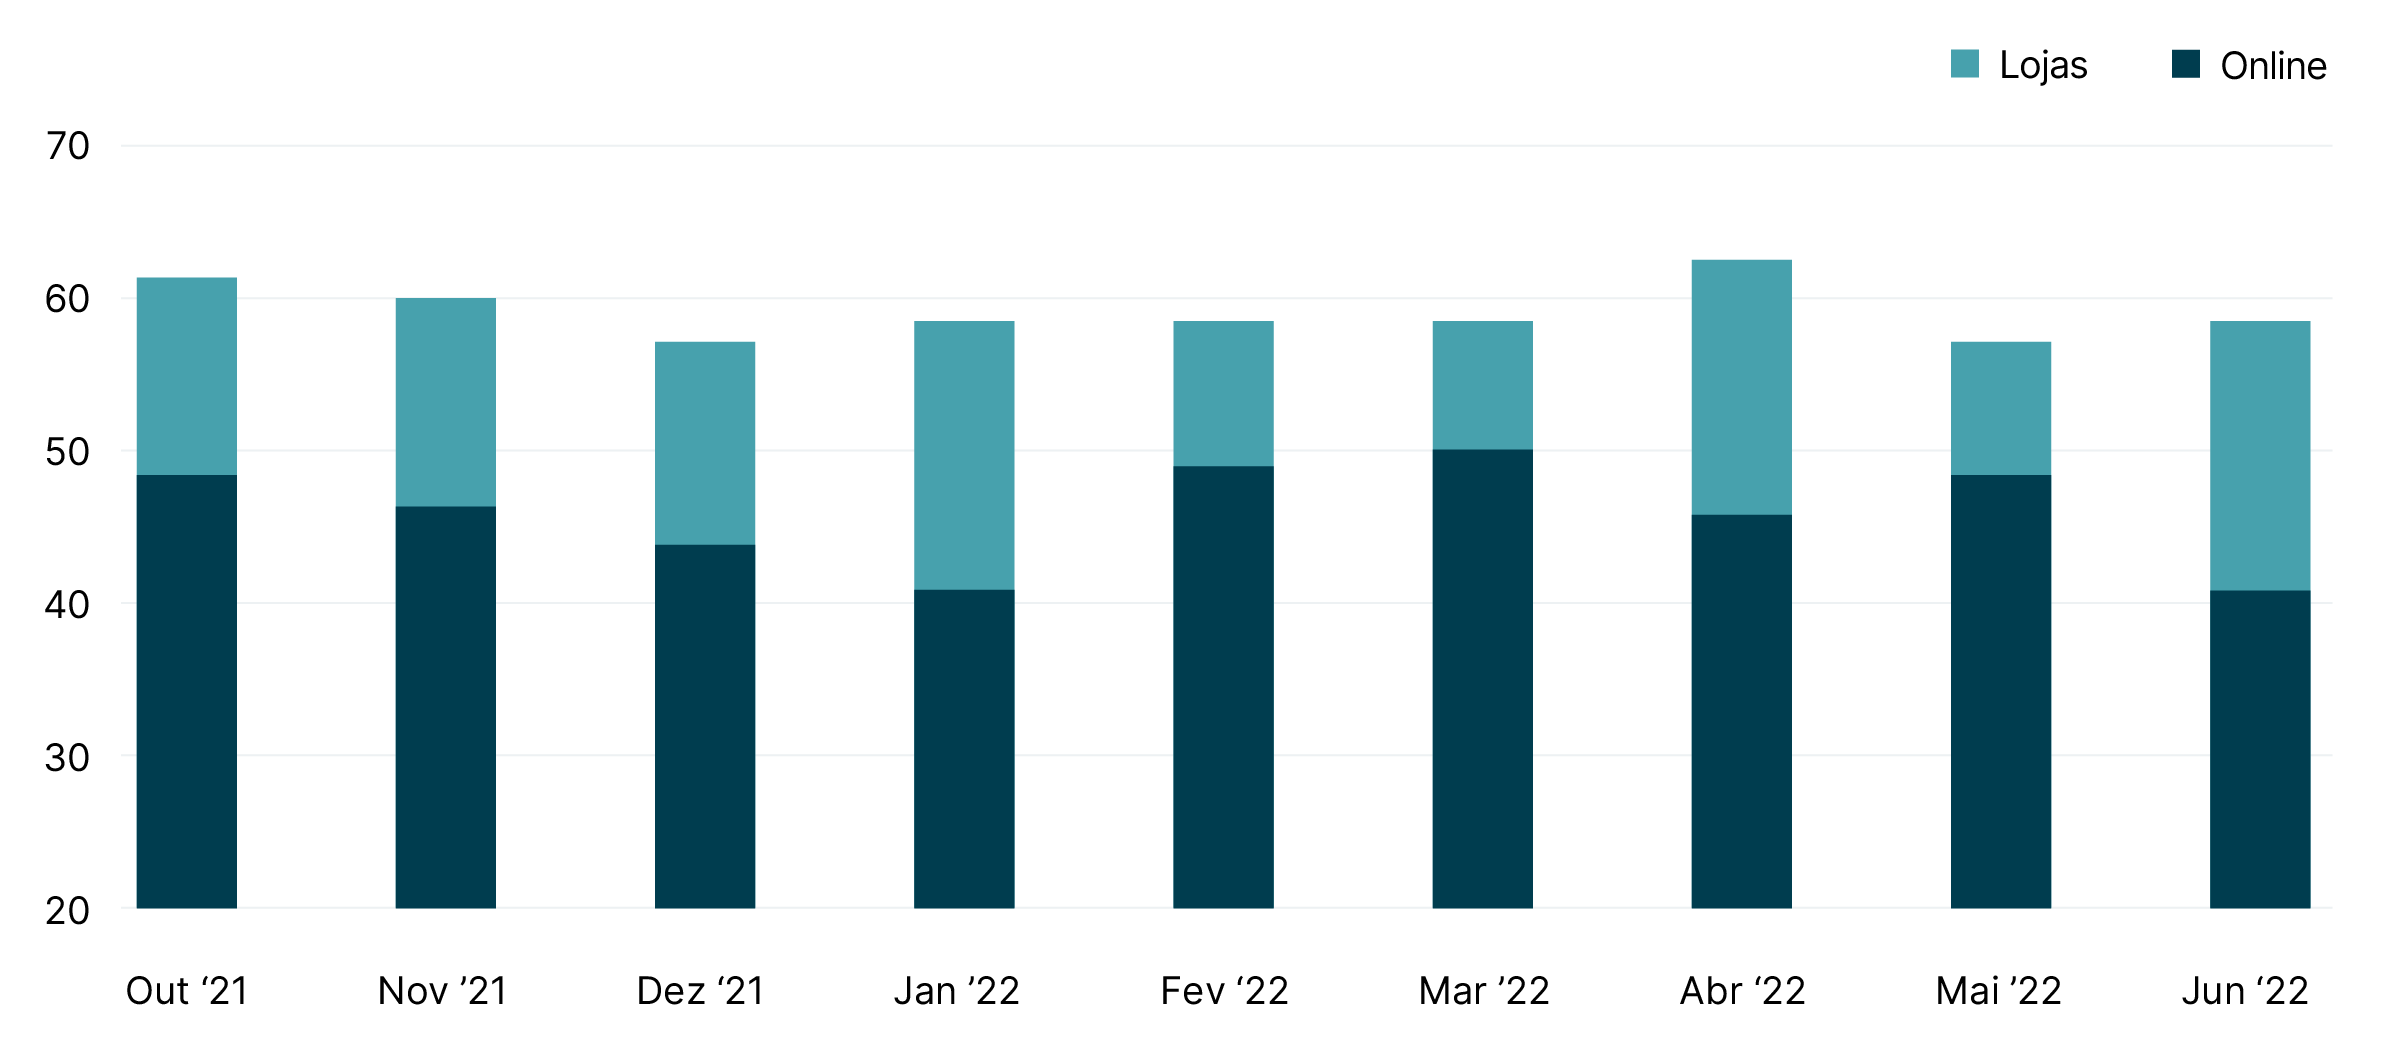 O varejo online perdendo espaço (% de indivíduos consumidores dos EUA que expressaram satisfação em cada categoria do varejo)